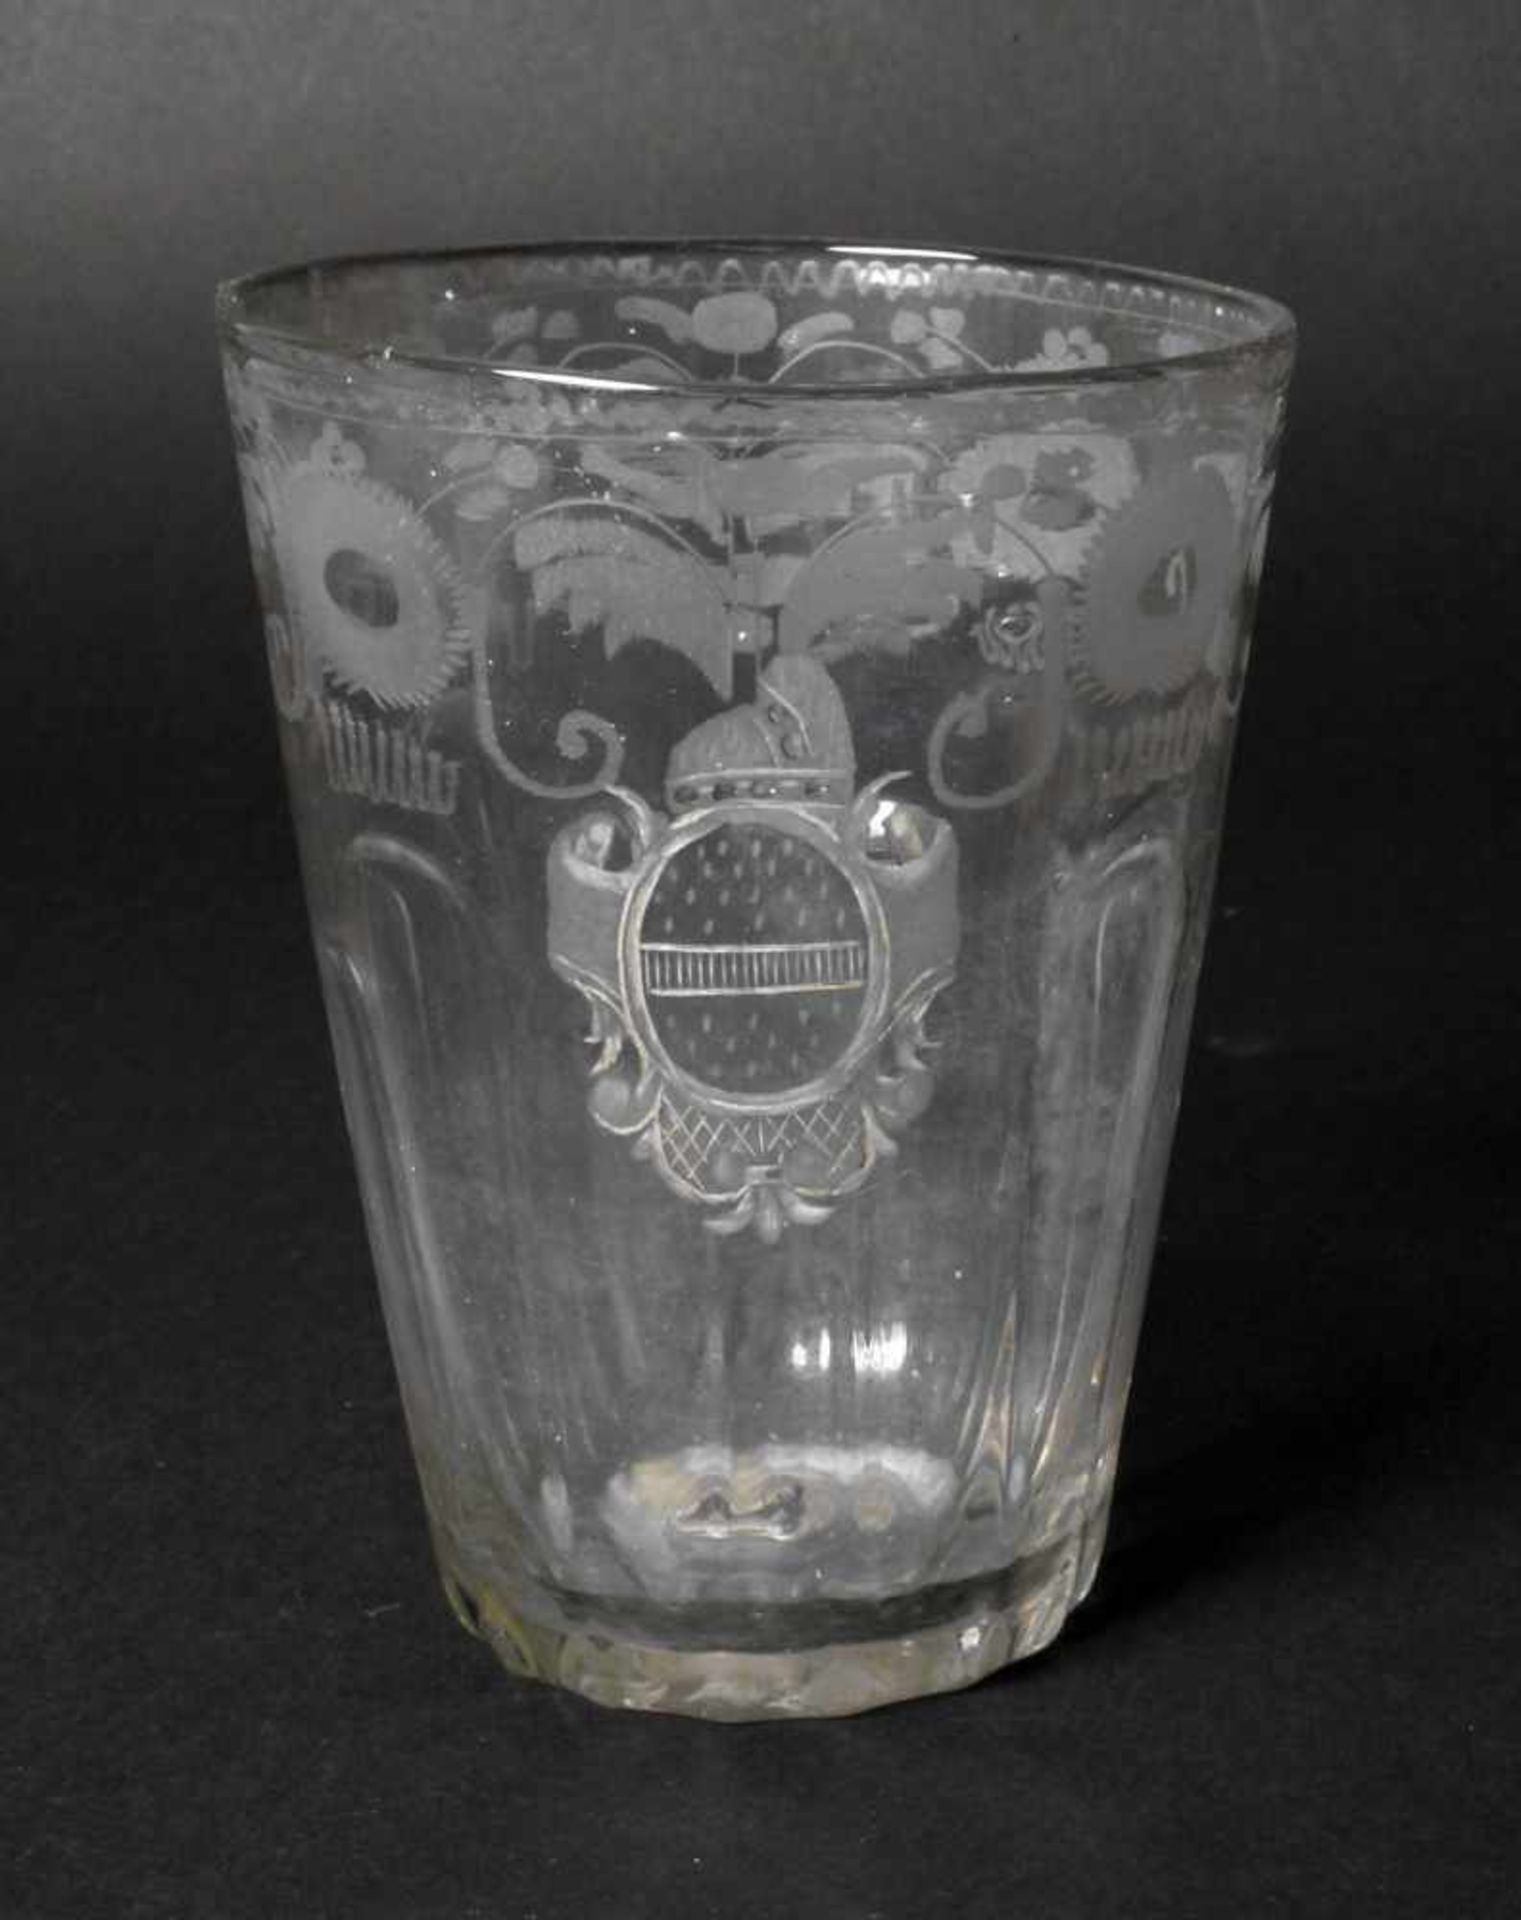 Großes barockes Becherglas2. Hälfte 18. Jh., farbloses Glas im Rippenmodel vorgeblasen, blasiger